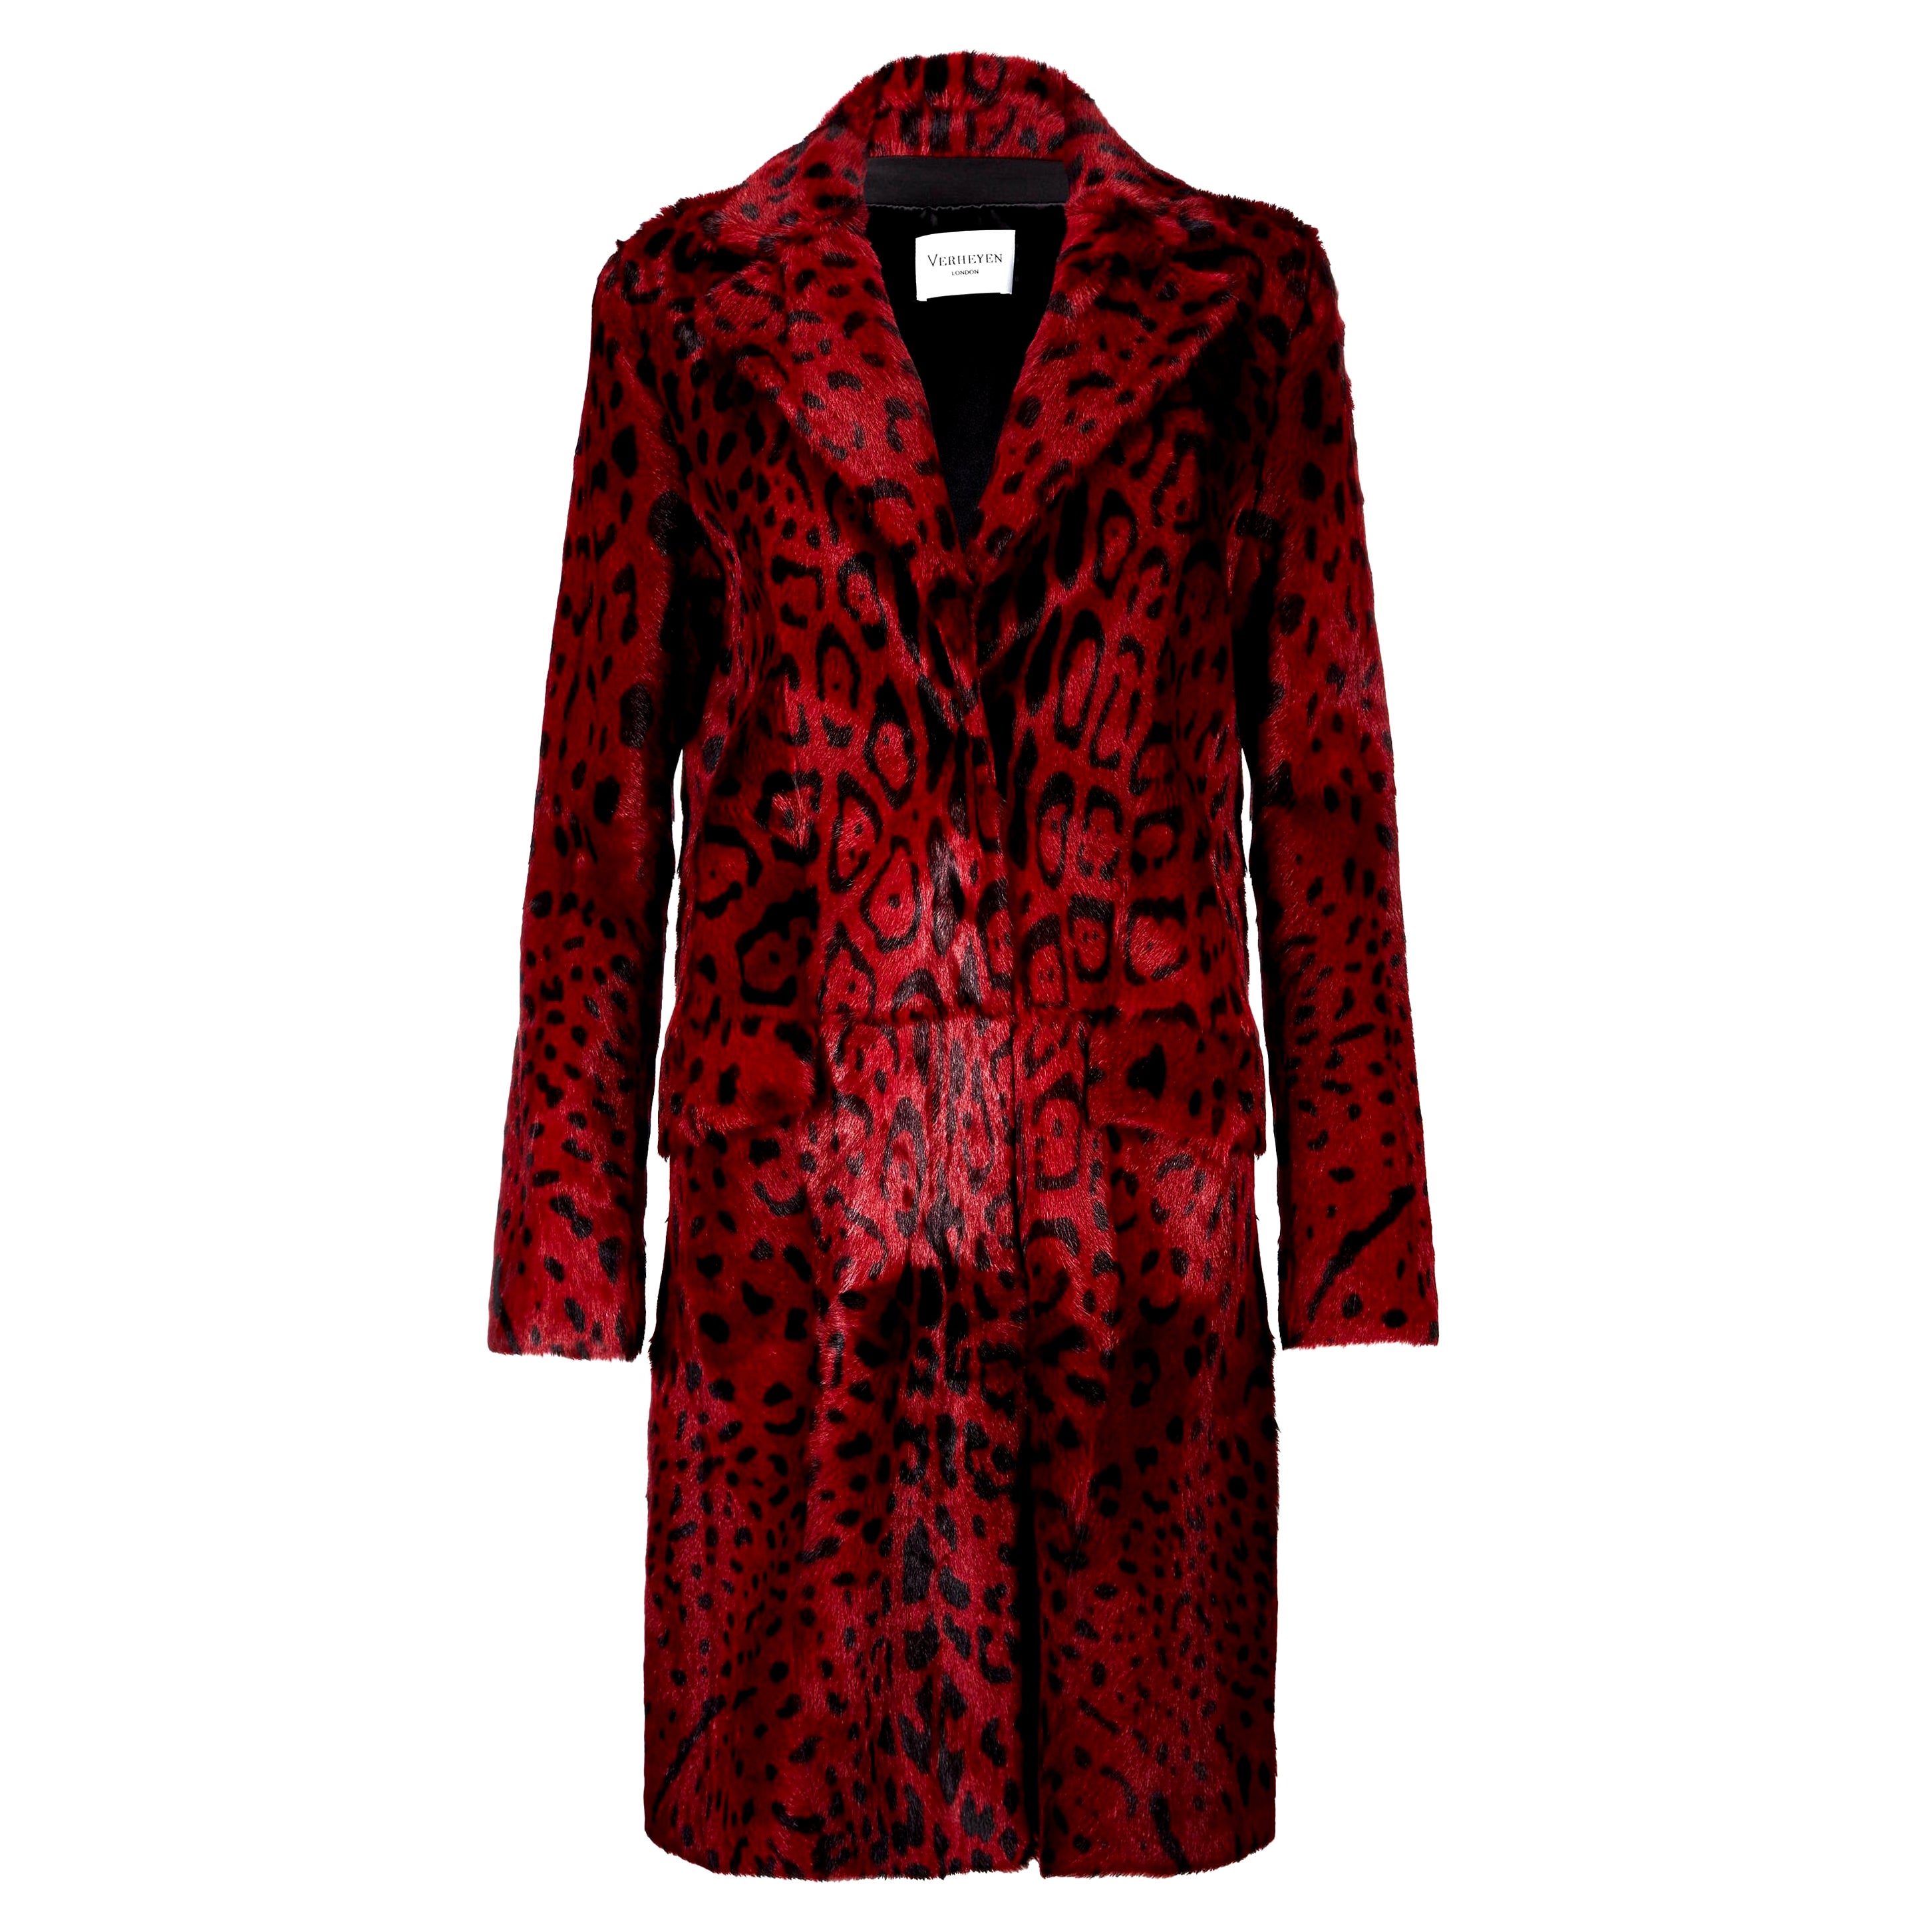 Verheyen London - Manteau imprimé léopard en fourrure de chèvre rouge rubis GB 10